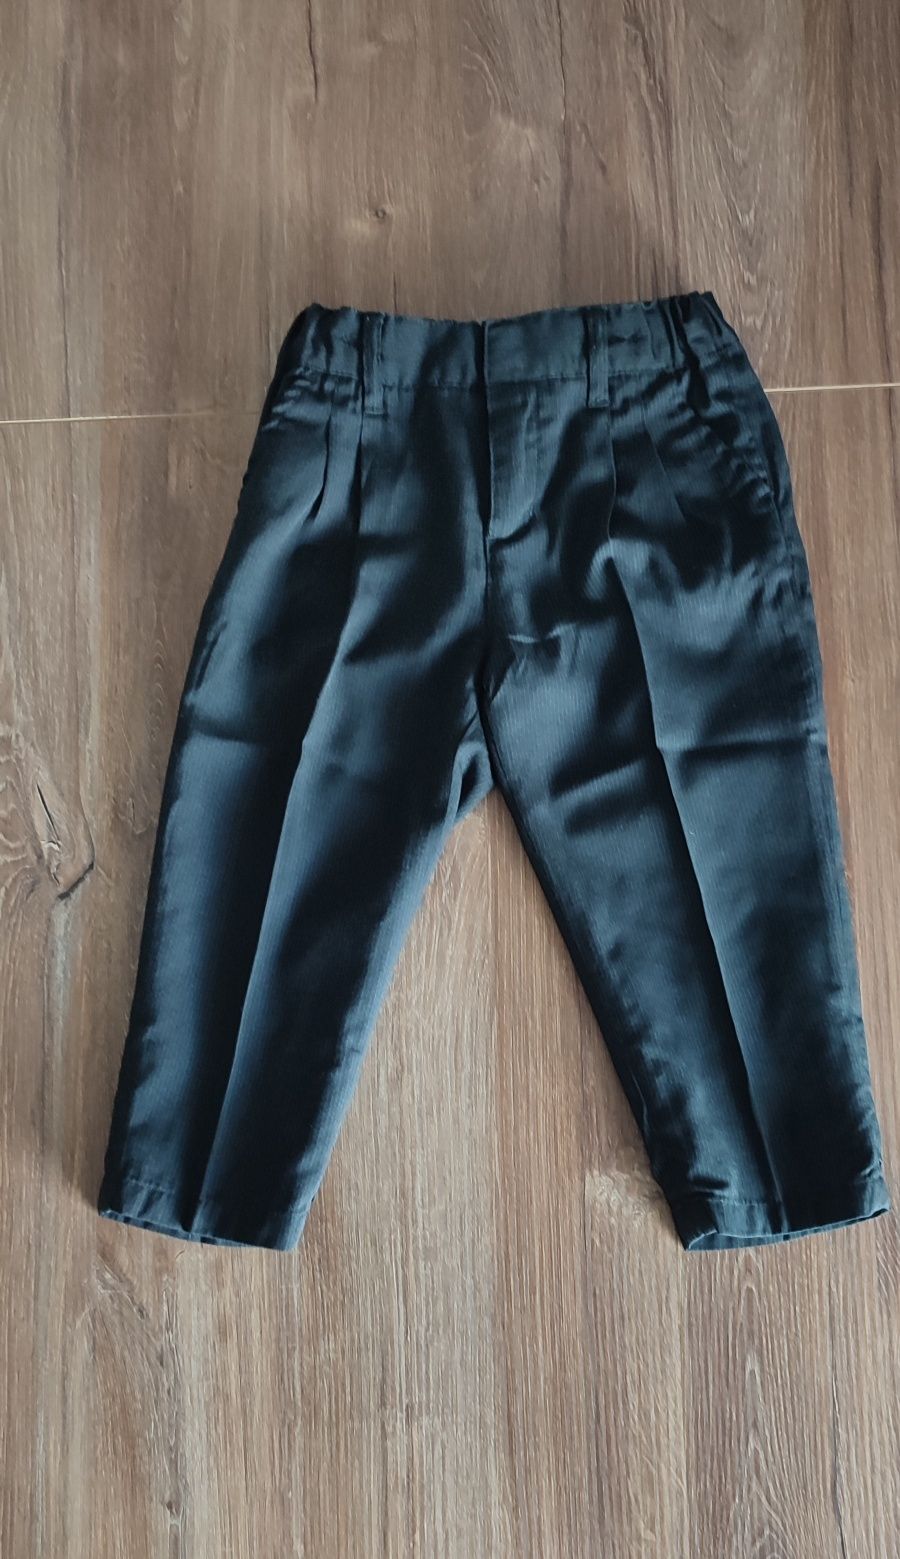 Spodnie spodenki garniturowe do garnituru chłopięce H&M rozmiar 80